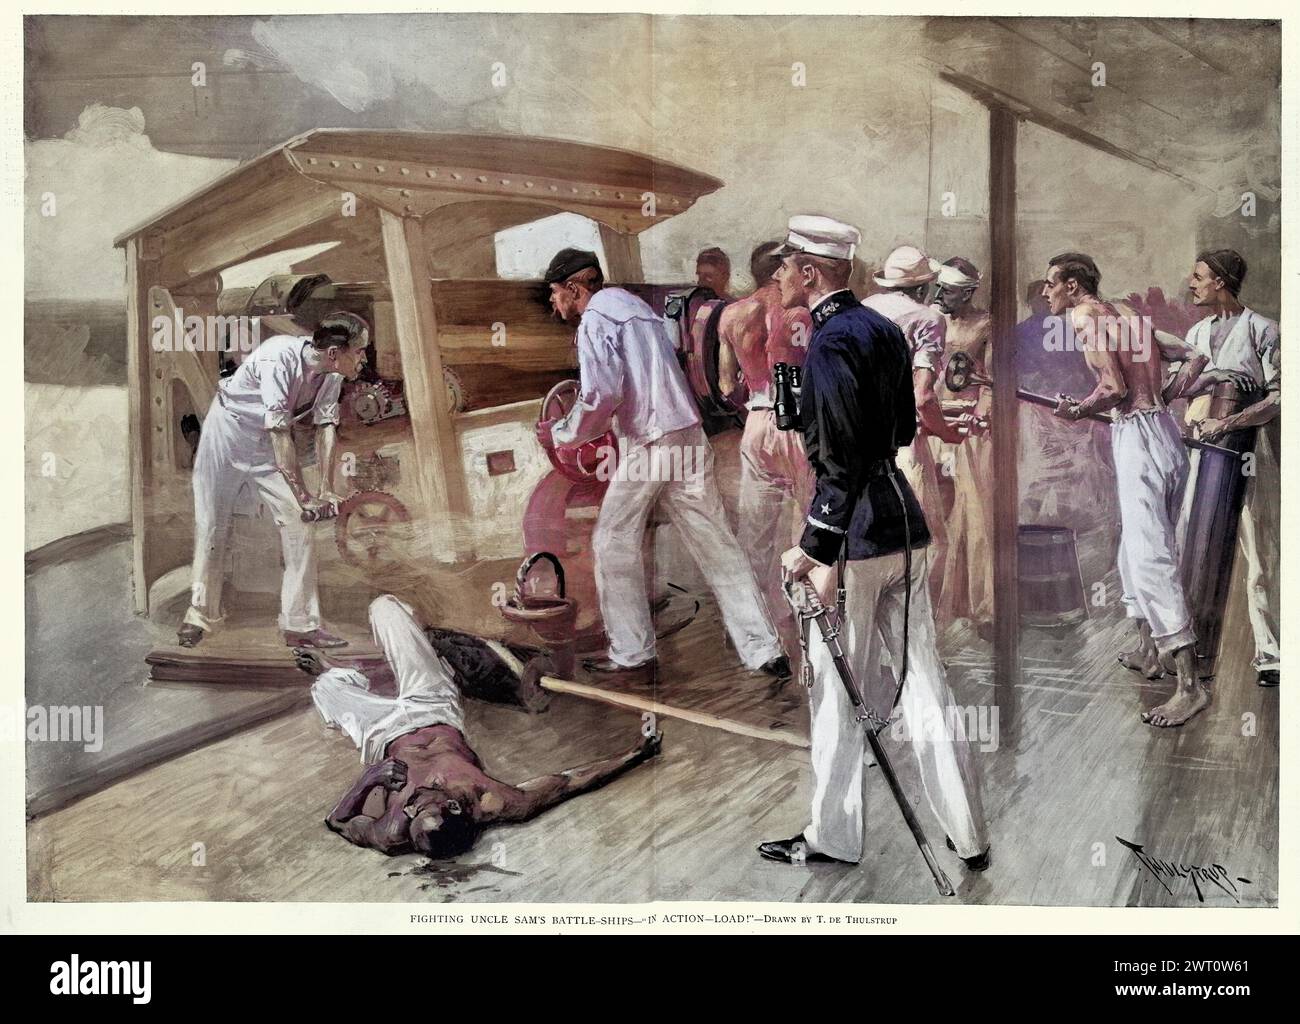 Marineros de ilustración vintage disparando un cañón en un acorazado de la Armada de los Estados Unidos durante la guerra hispano-americana , historia militar, victoriano, siglo 19. Foto de stock